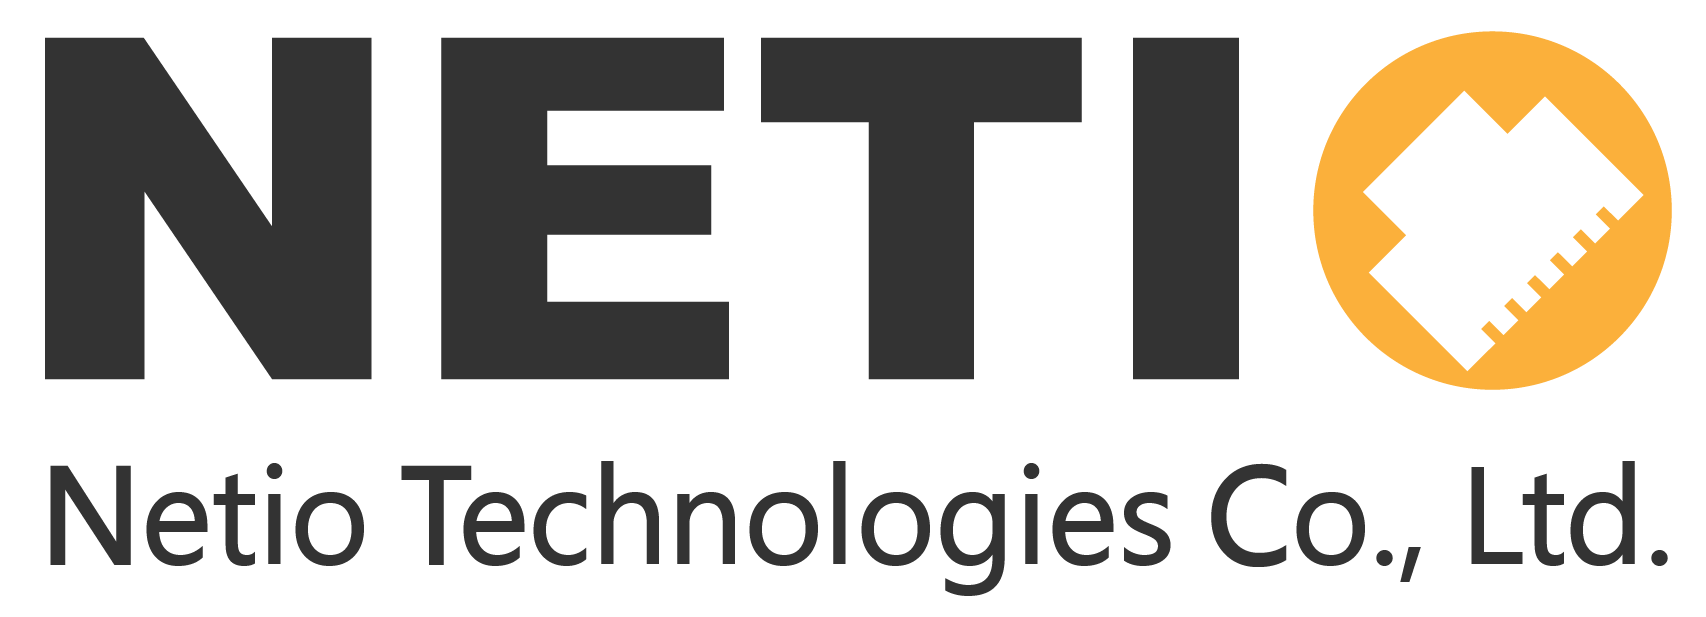 Netiotek - logo